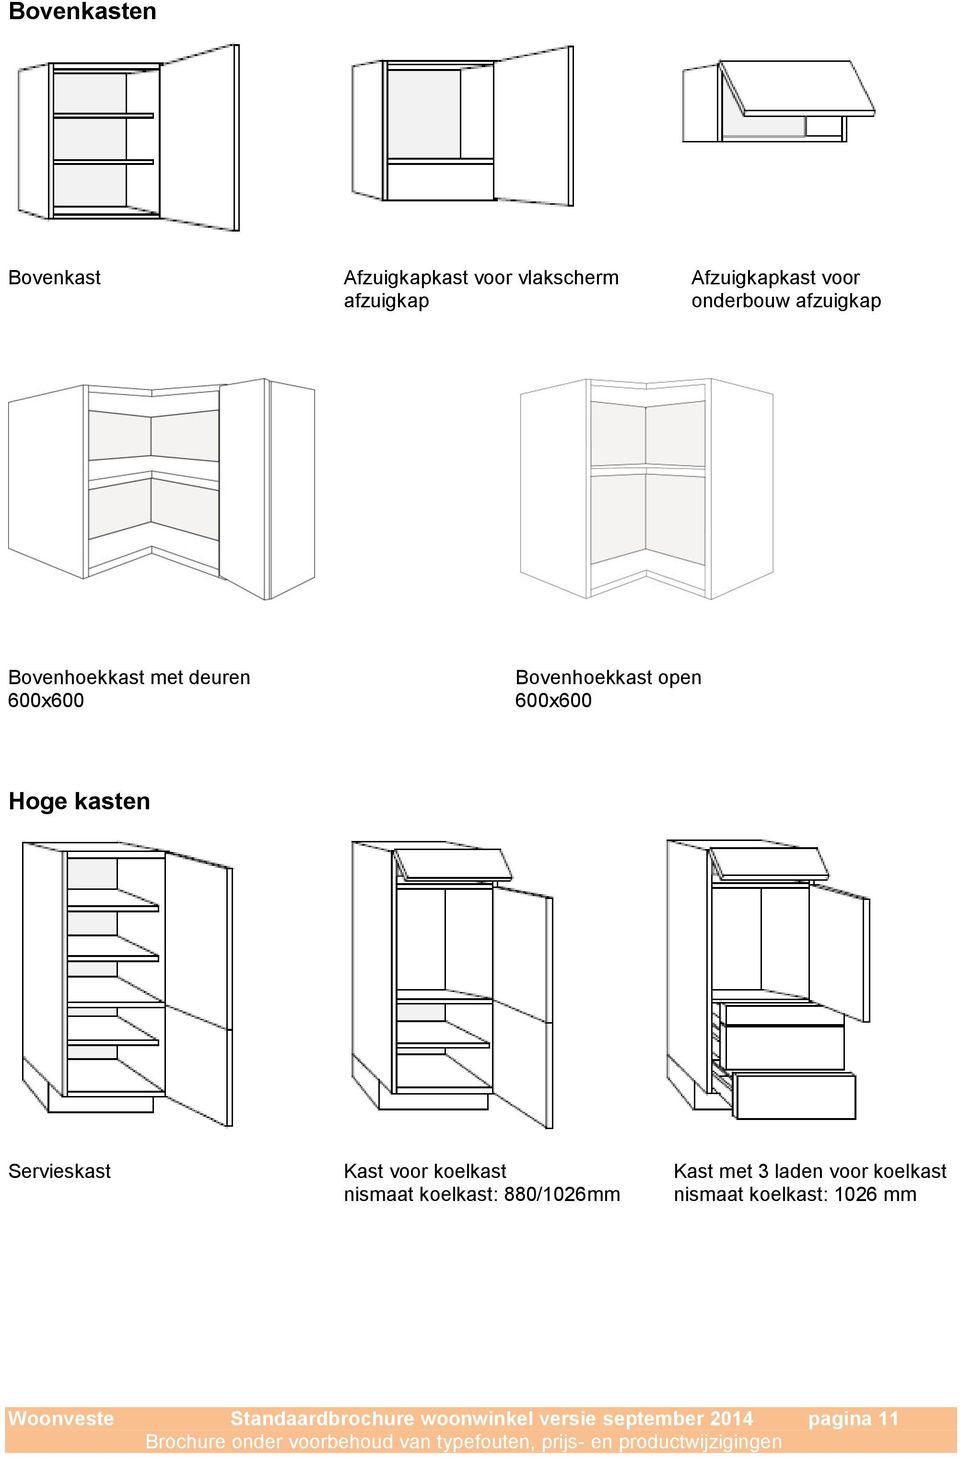 kasten Servieskast Kast voor koelkast Kast met 3 laden voor koelkast nismaat koelkast: